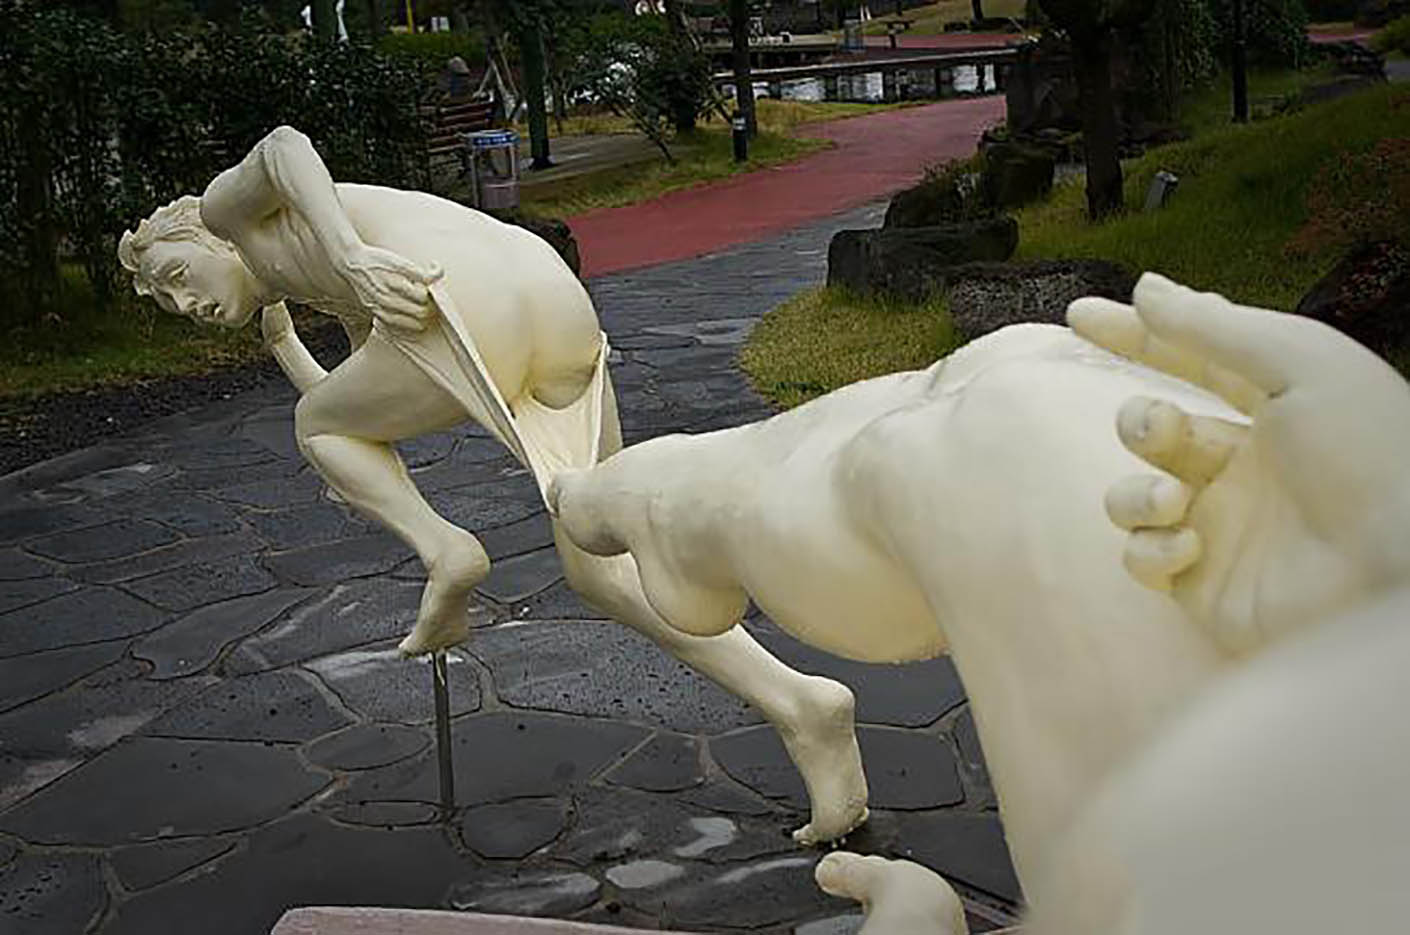 Erotic sculpture’s Park, Jeju Island, South Korea “Love Land - 73“